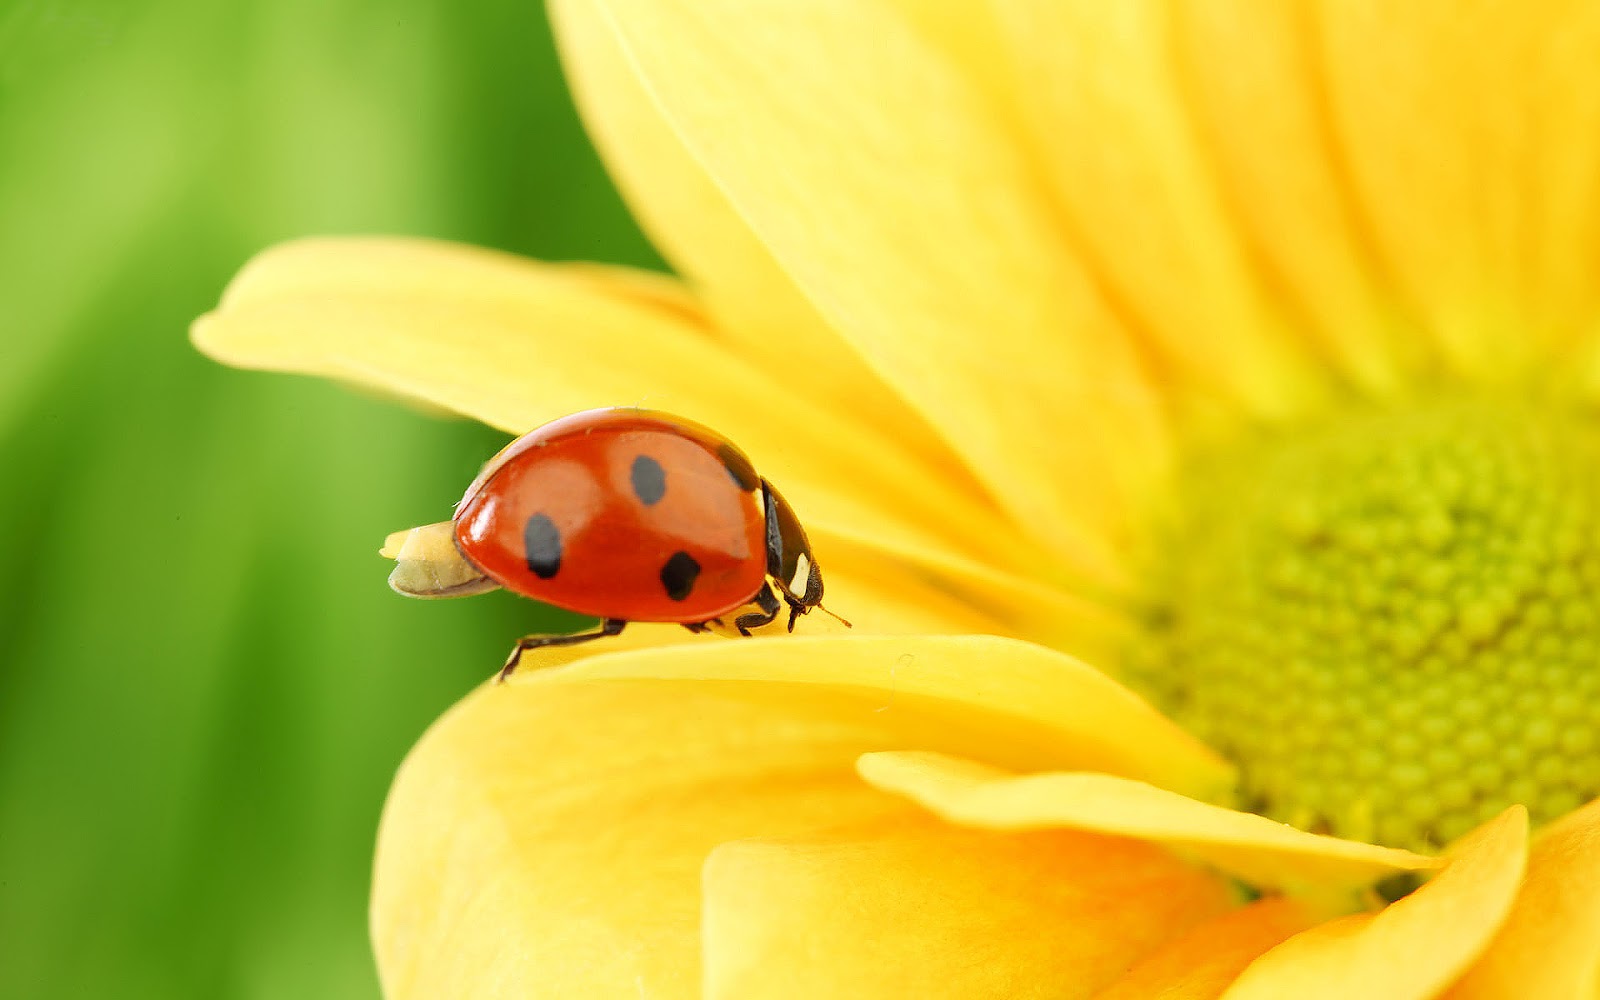 ladybug wallpaper,ladybug,macro photography,insect,beetle,yellow